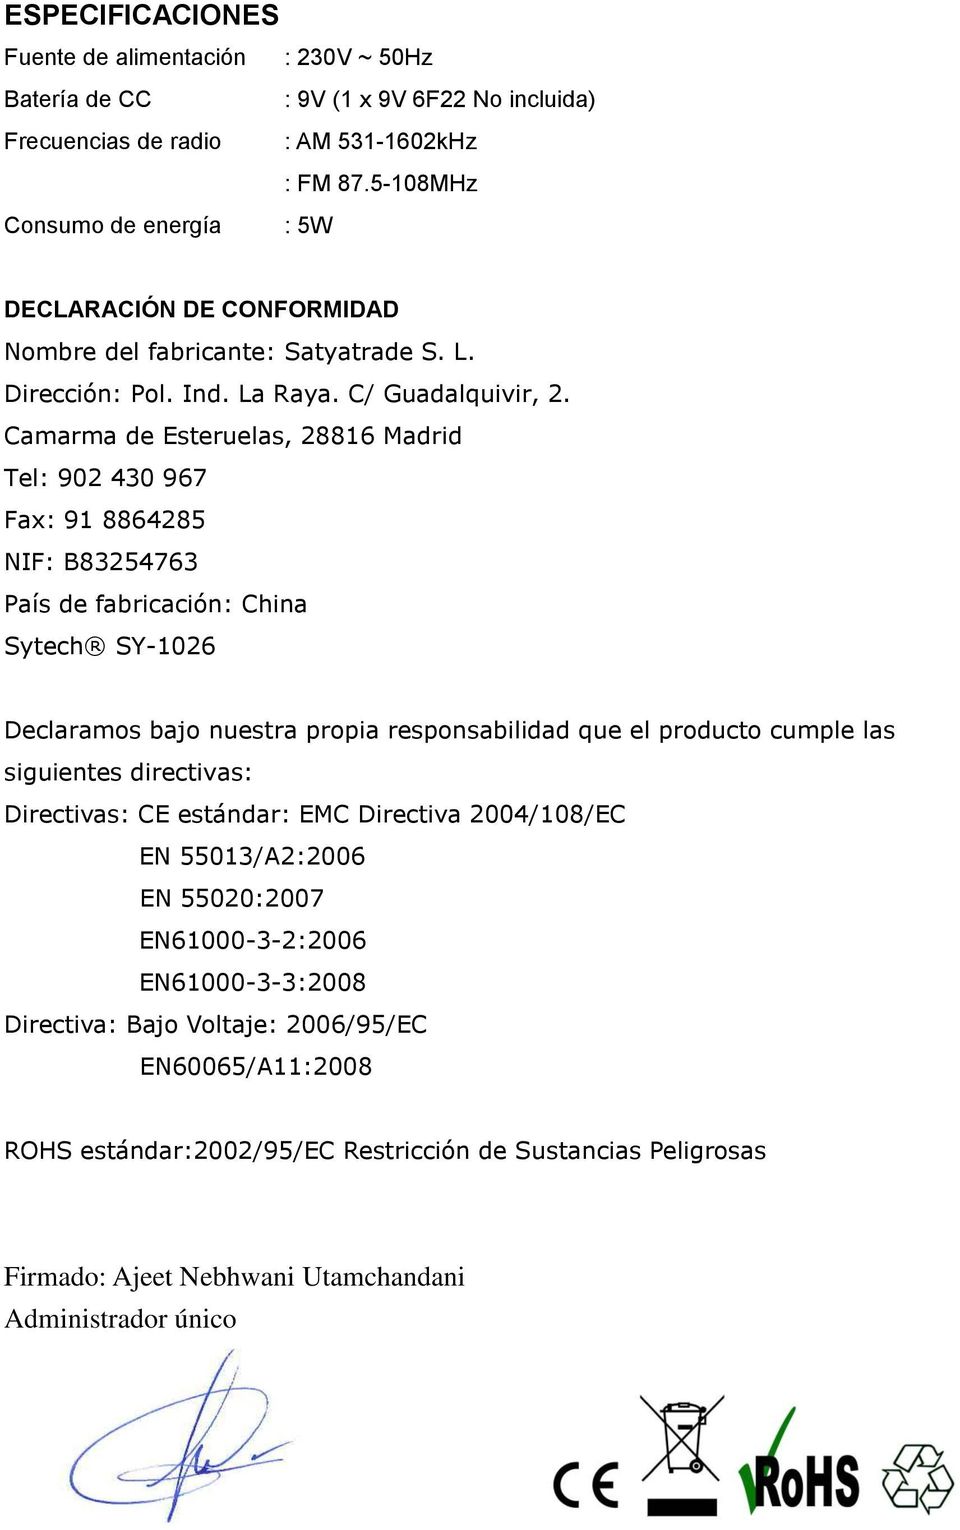 Camarma de Esteruelas, 28816 Madrid Tel: 902 430 967 Fax: 91 8864285 NIF: B83254763 País de fabricación: China Sytech SY-1026 Declaramos bajo nuestra propia responsabilidad que el producto cumple las